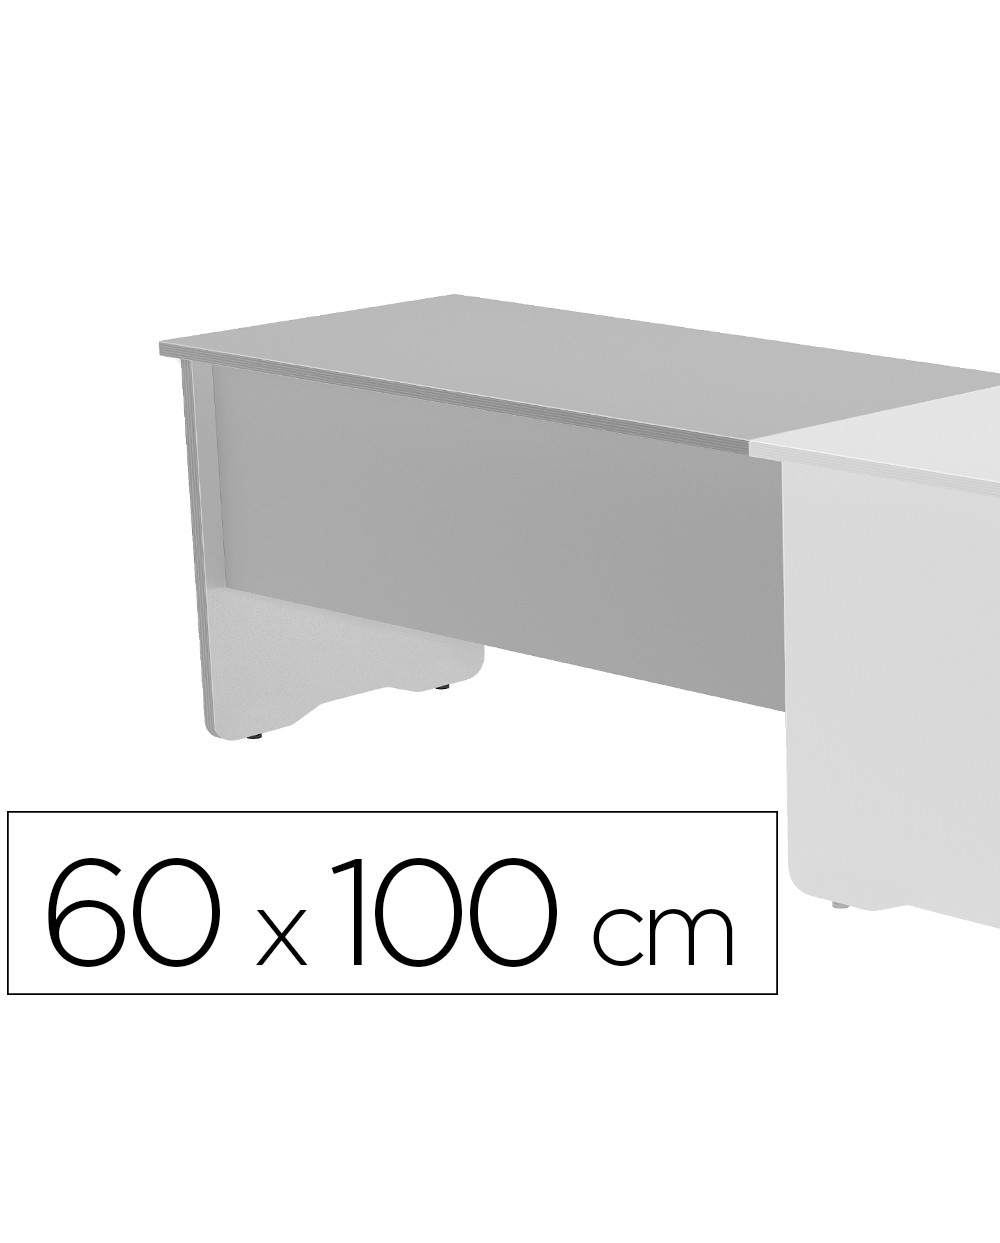 Ala para mesa rocada serie work 60x100 cm derecha o izquierda acabado ab02 aluminio gris